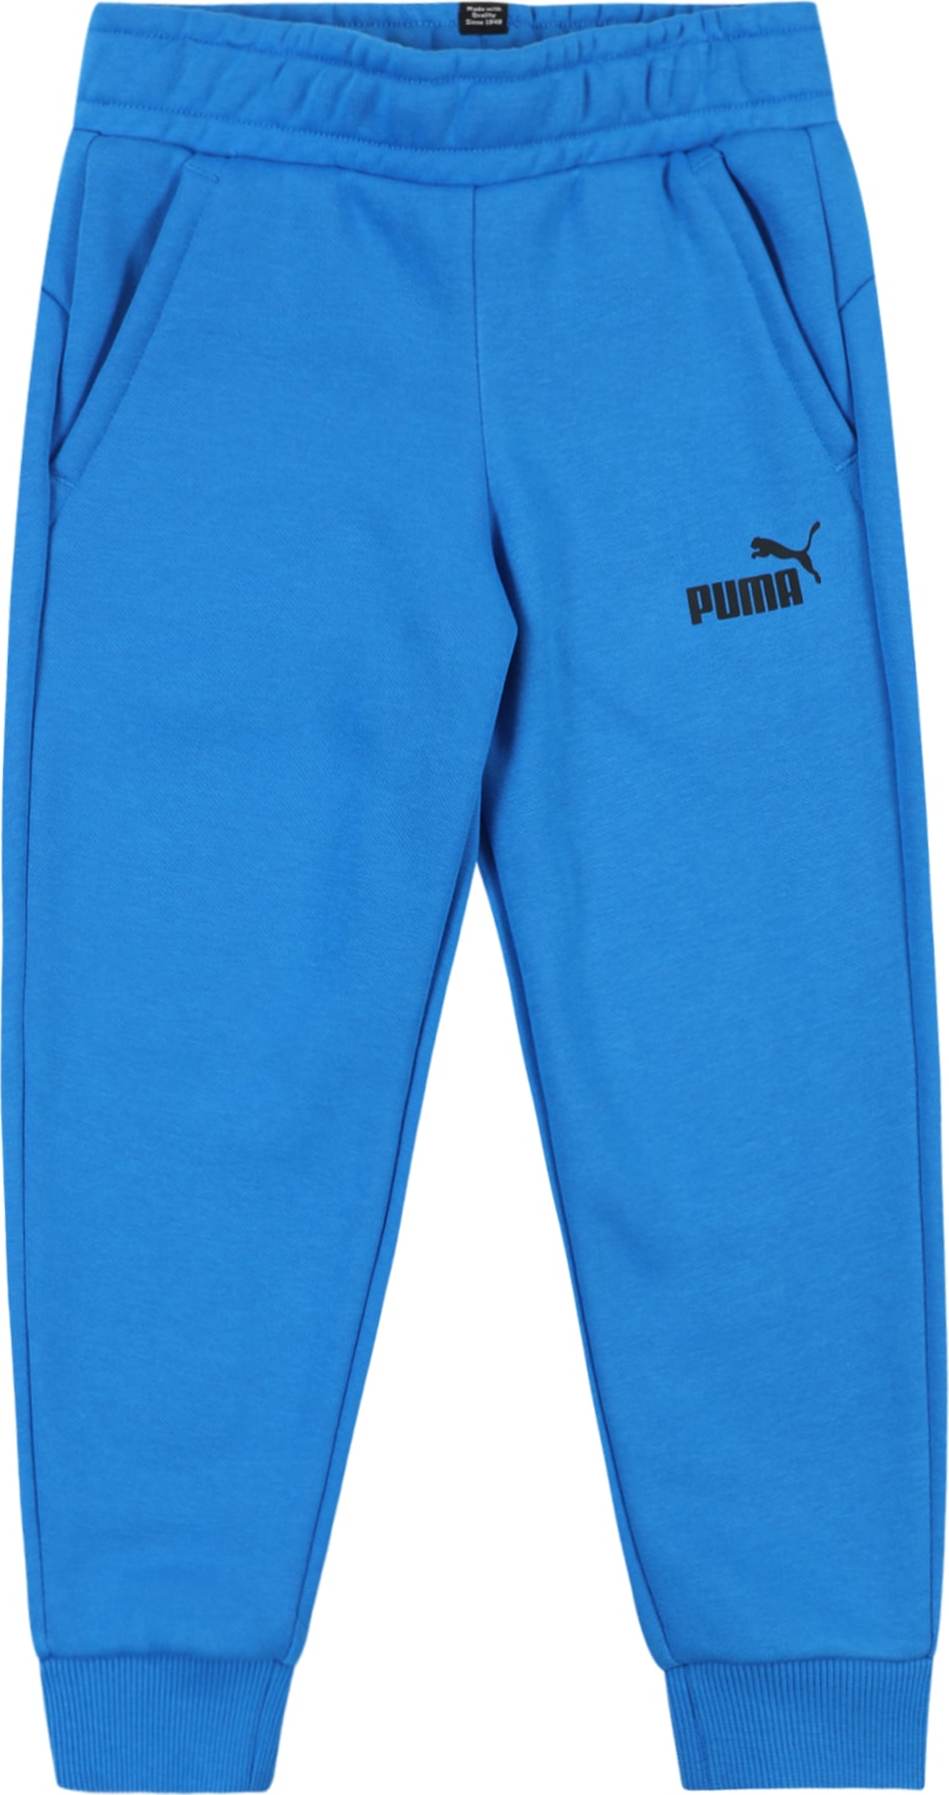 Kalhoty Puma nebeská modř / černá